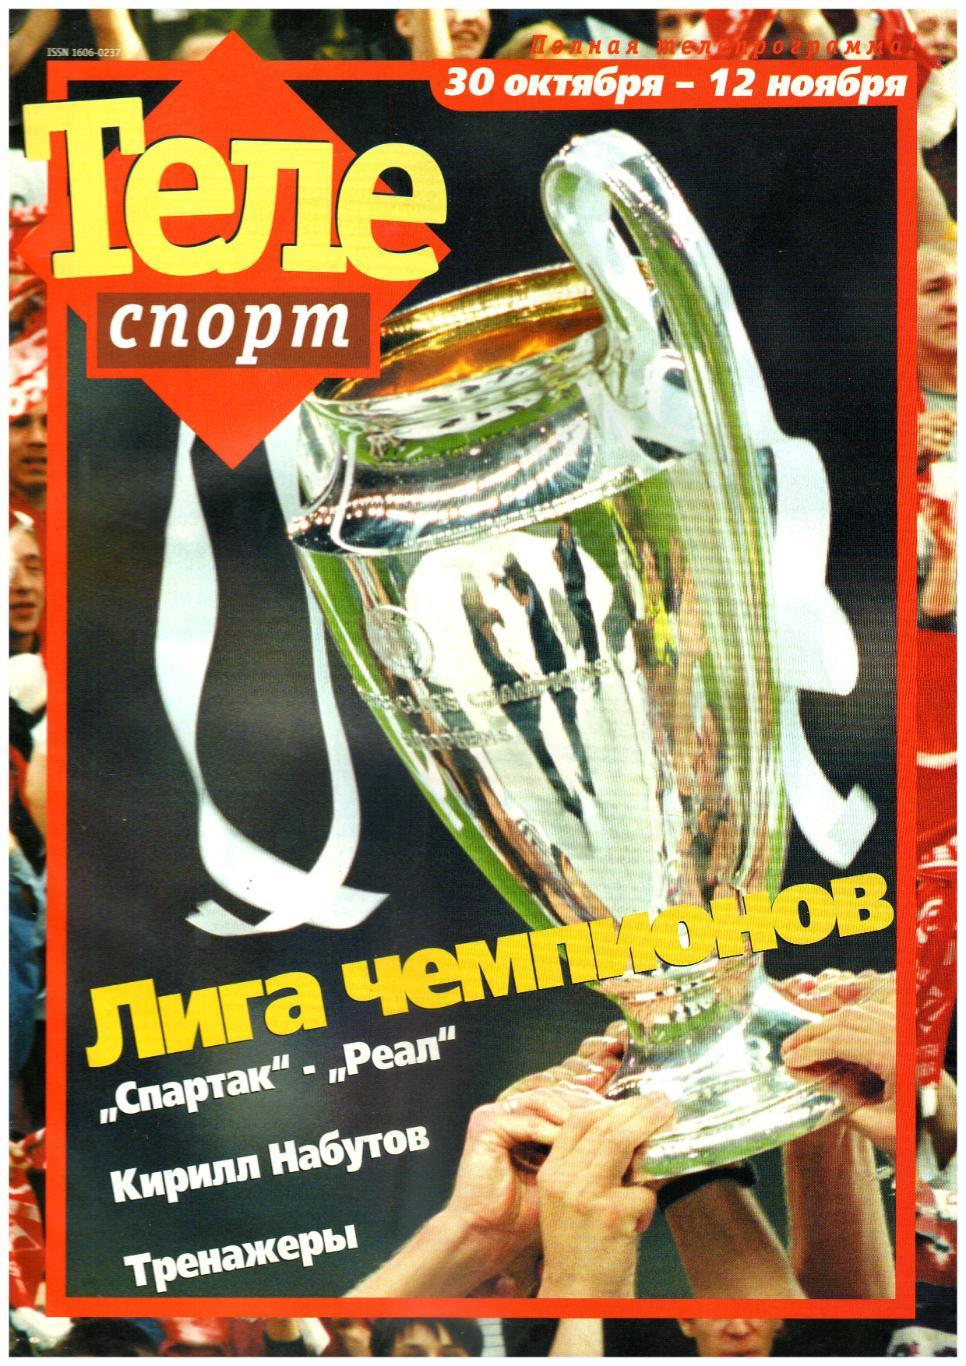 Телеспорт №24(31) 2000 Превью Спартак Москва - Реал Мадрид 07.11.2000 / В.Гусев